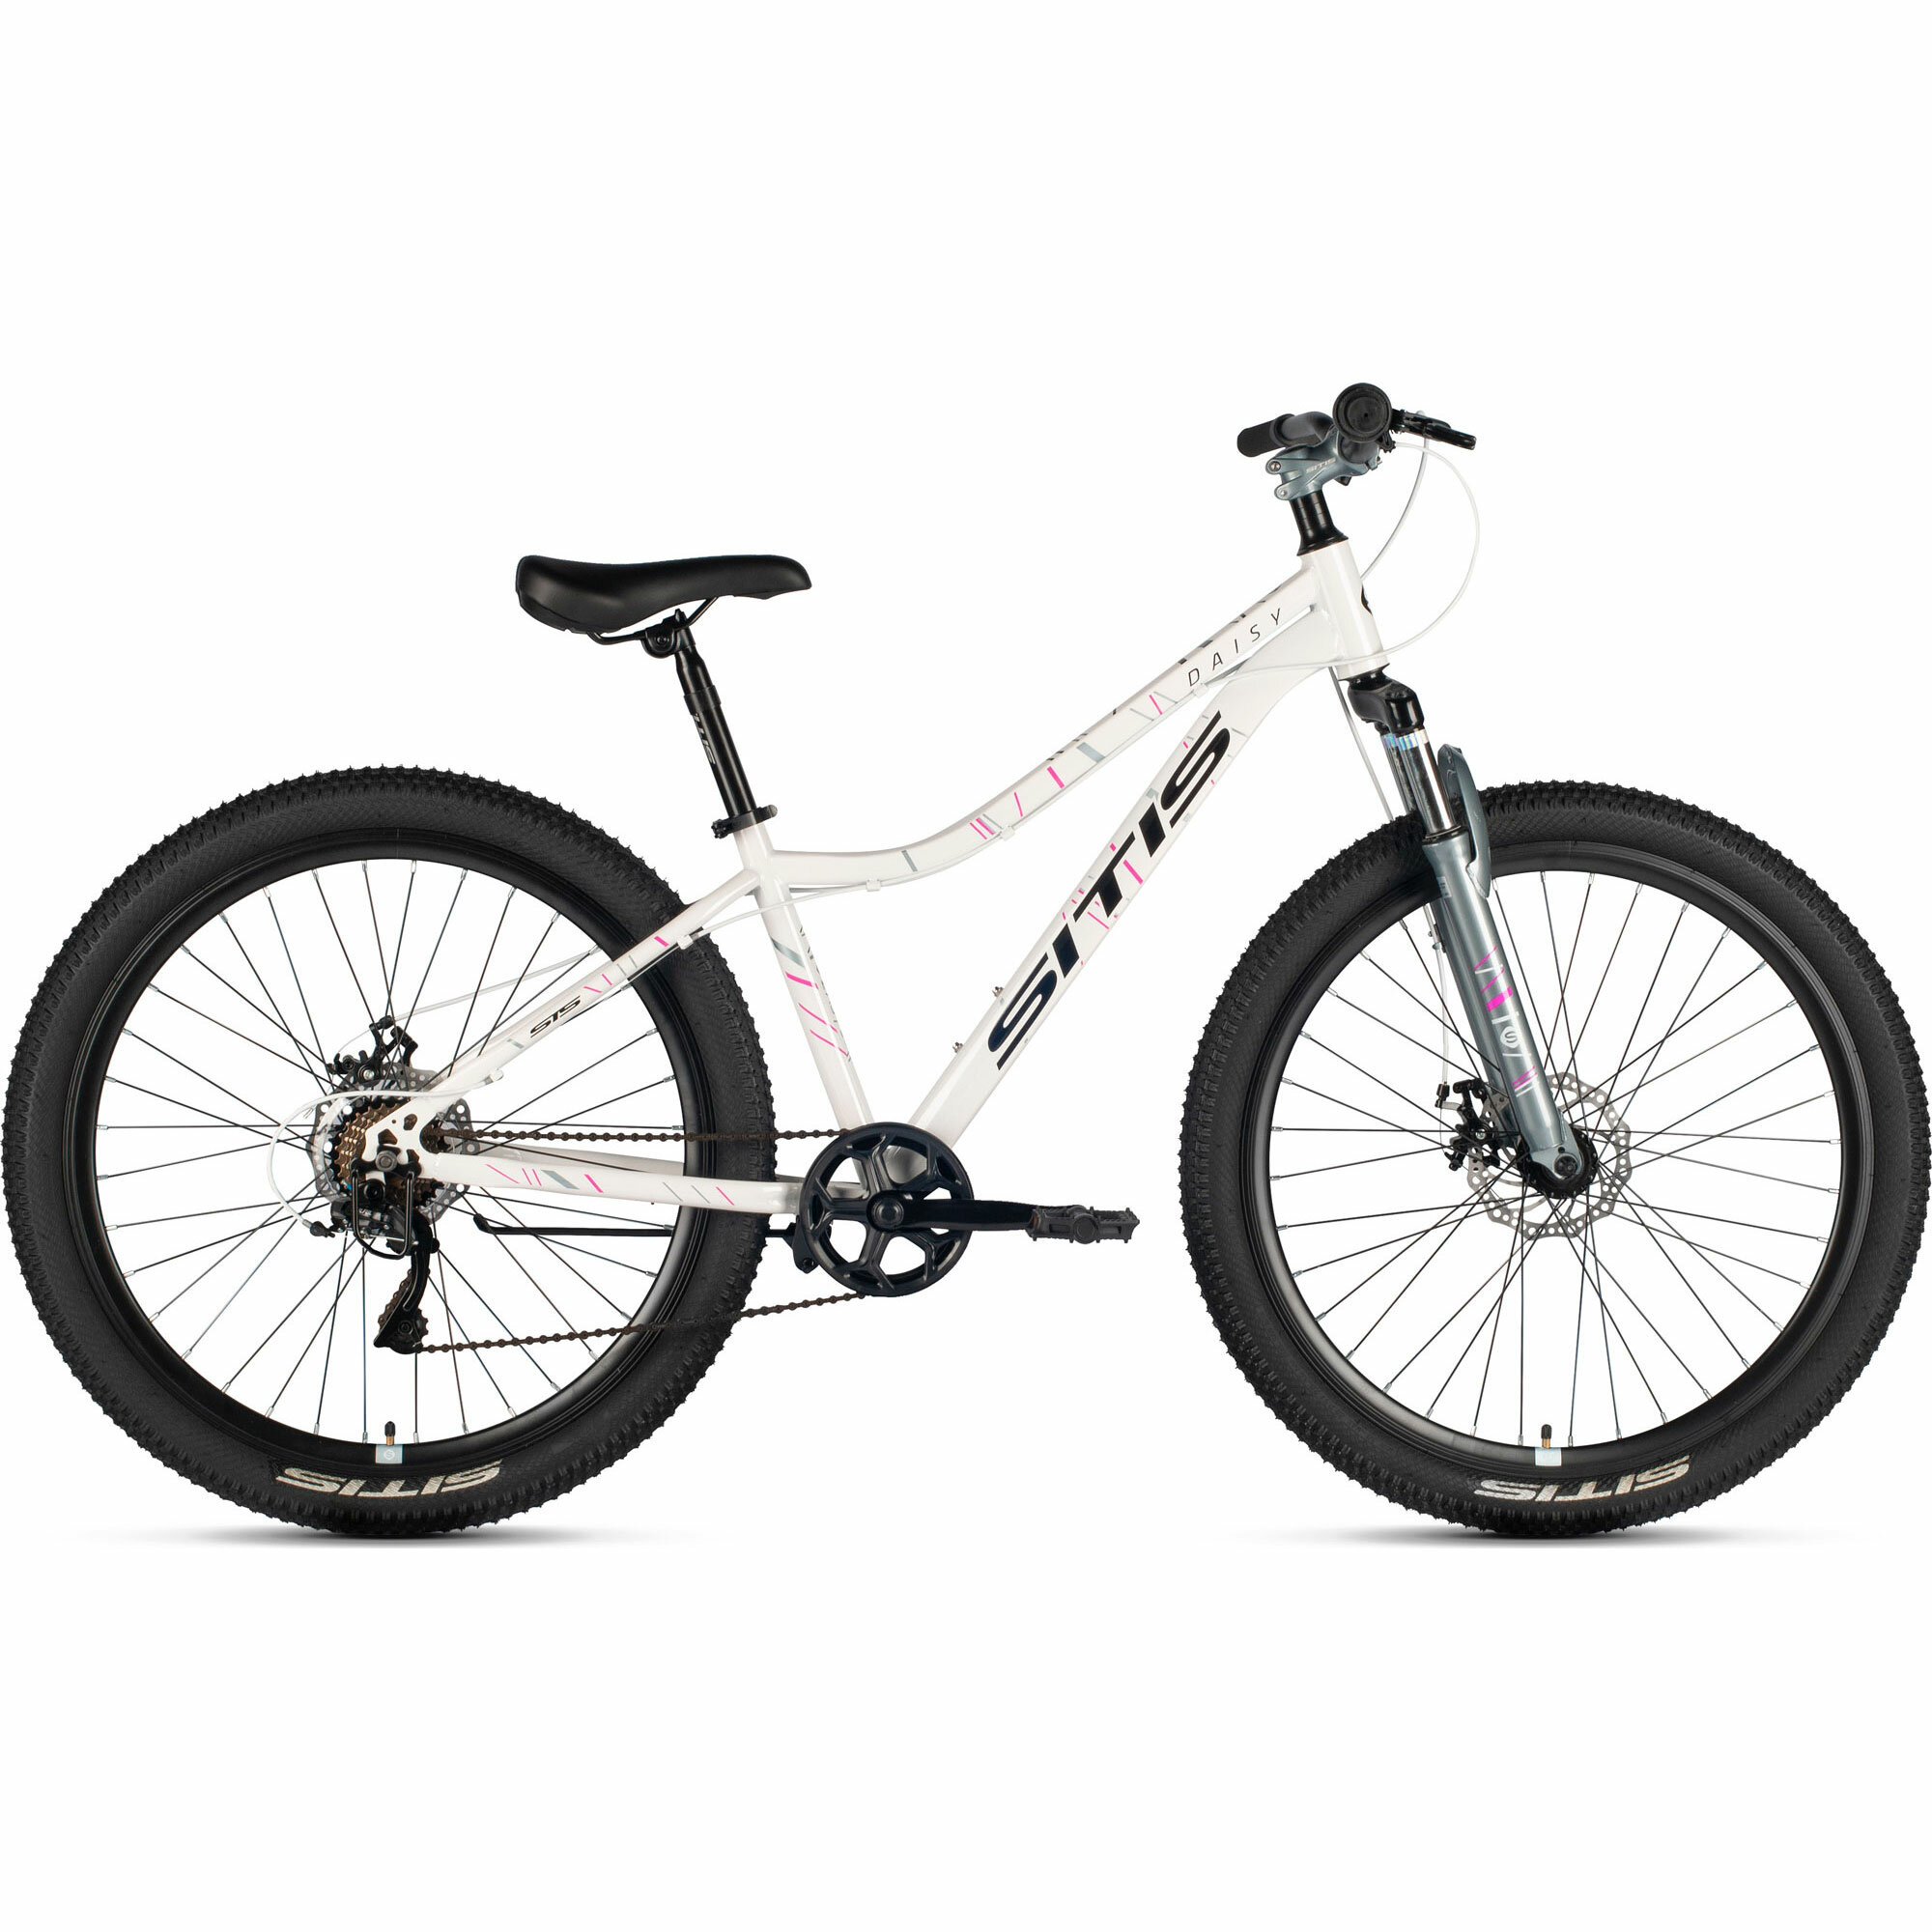 Велосипед горный SITIS DAISY 27,5" 7sp (2024), хардтейл, взрослый, женский, стальная рама, 7 скорости, дисковые механические тормоза, цвет White-Grey-Black, белый/серый/черный цвет, размер рамы 17", для роста 170-180 см